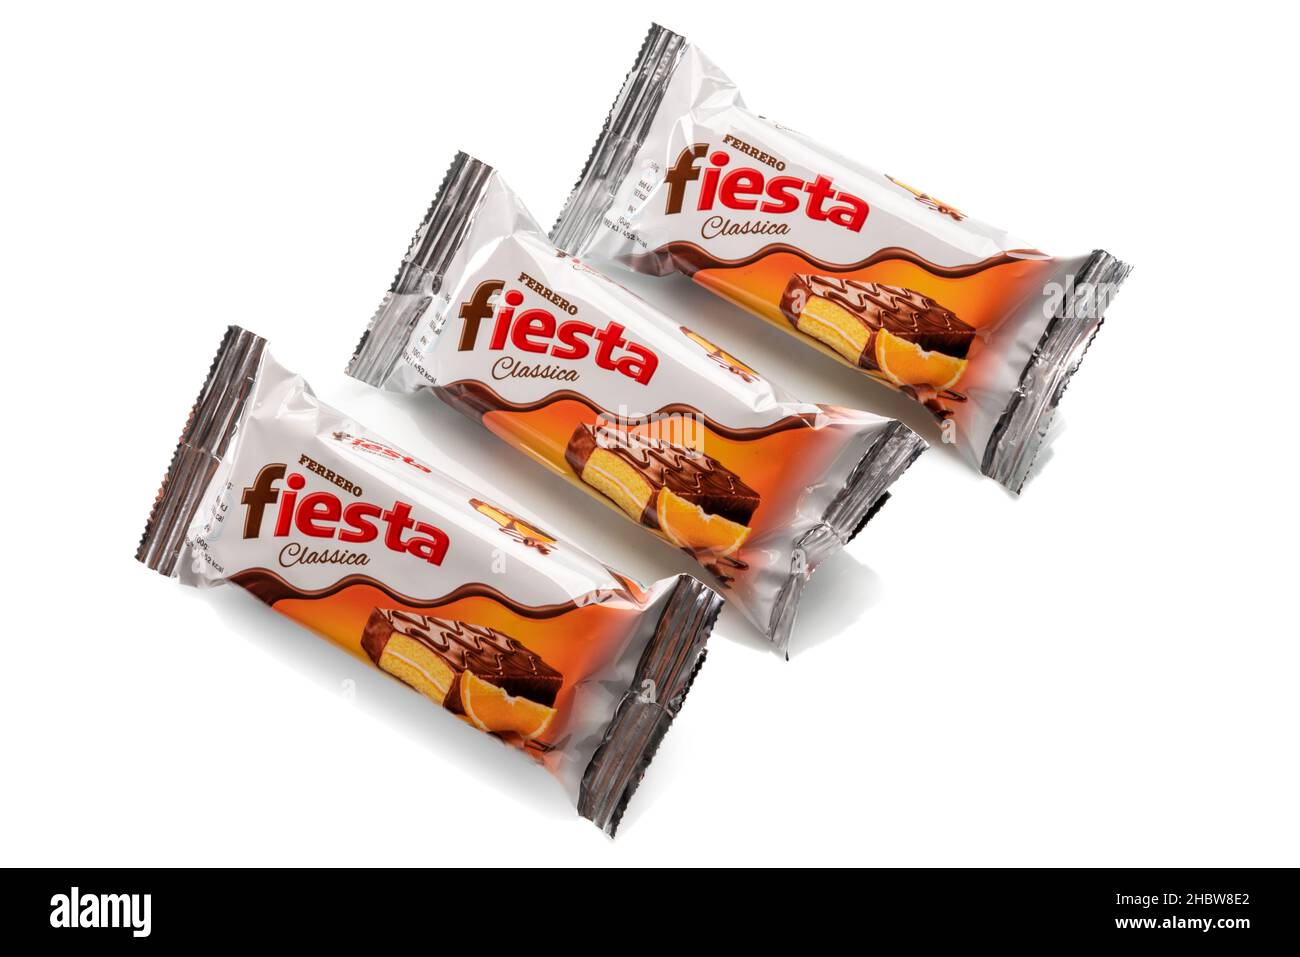 Alba, Italien - 21. Dezember 2021: Fiesta Ferrero Schokoladenjause für Kinder. Drei Packungen auf Weiß isoliert. Ferrero ist weltberühmte Süßwarenfabrik Stockfoto